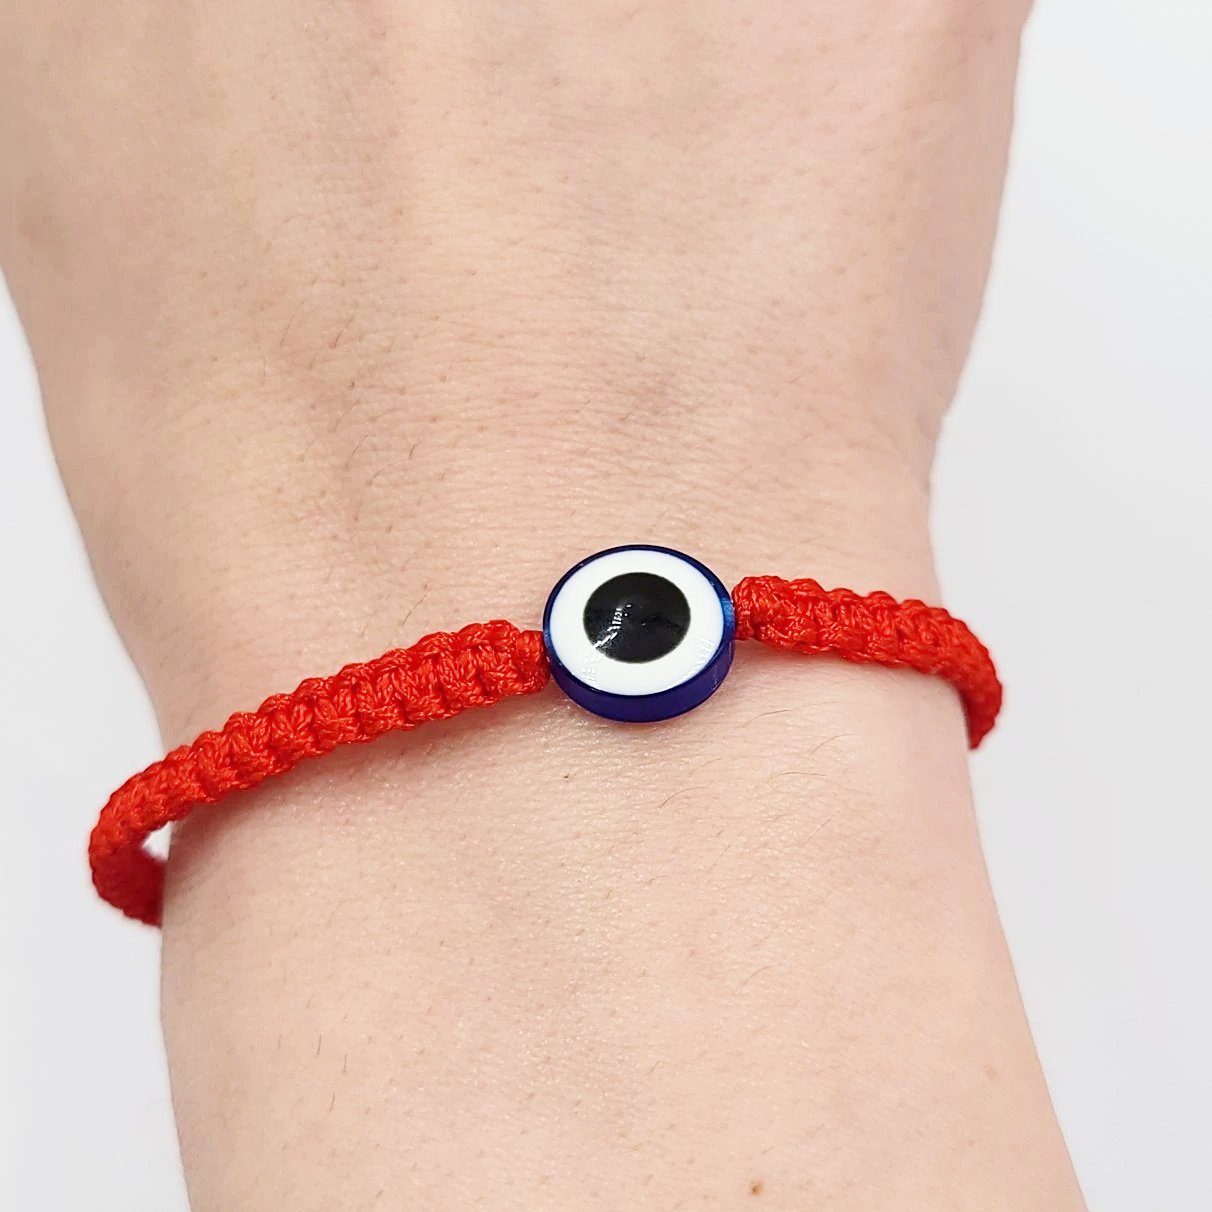 Evil Eye Bracelet Red String Bracelet - Elevated Metaphysical